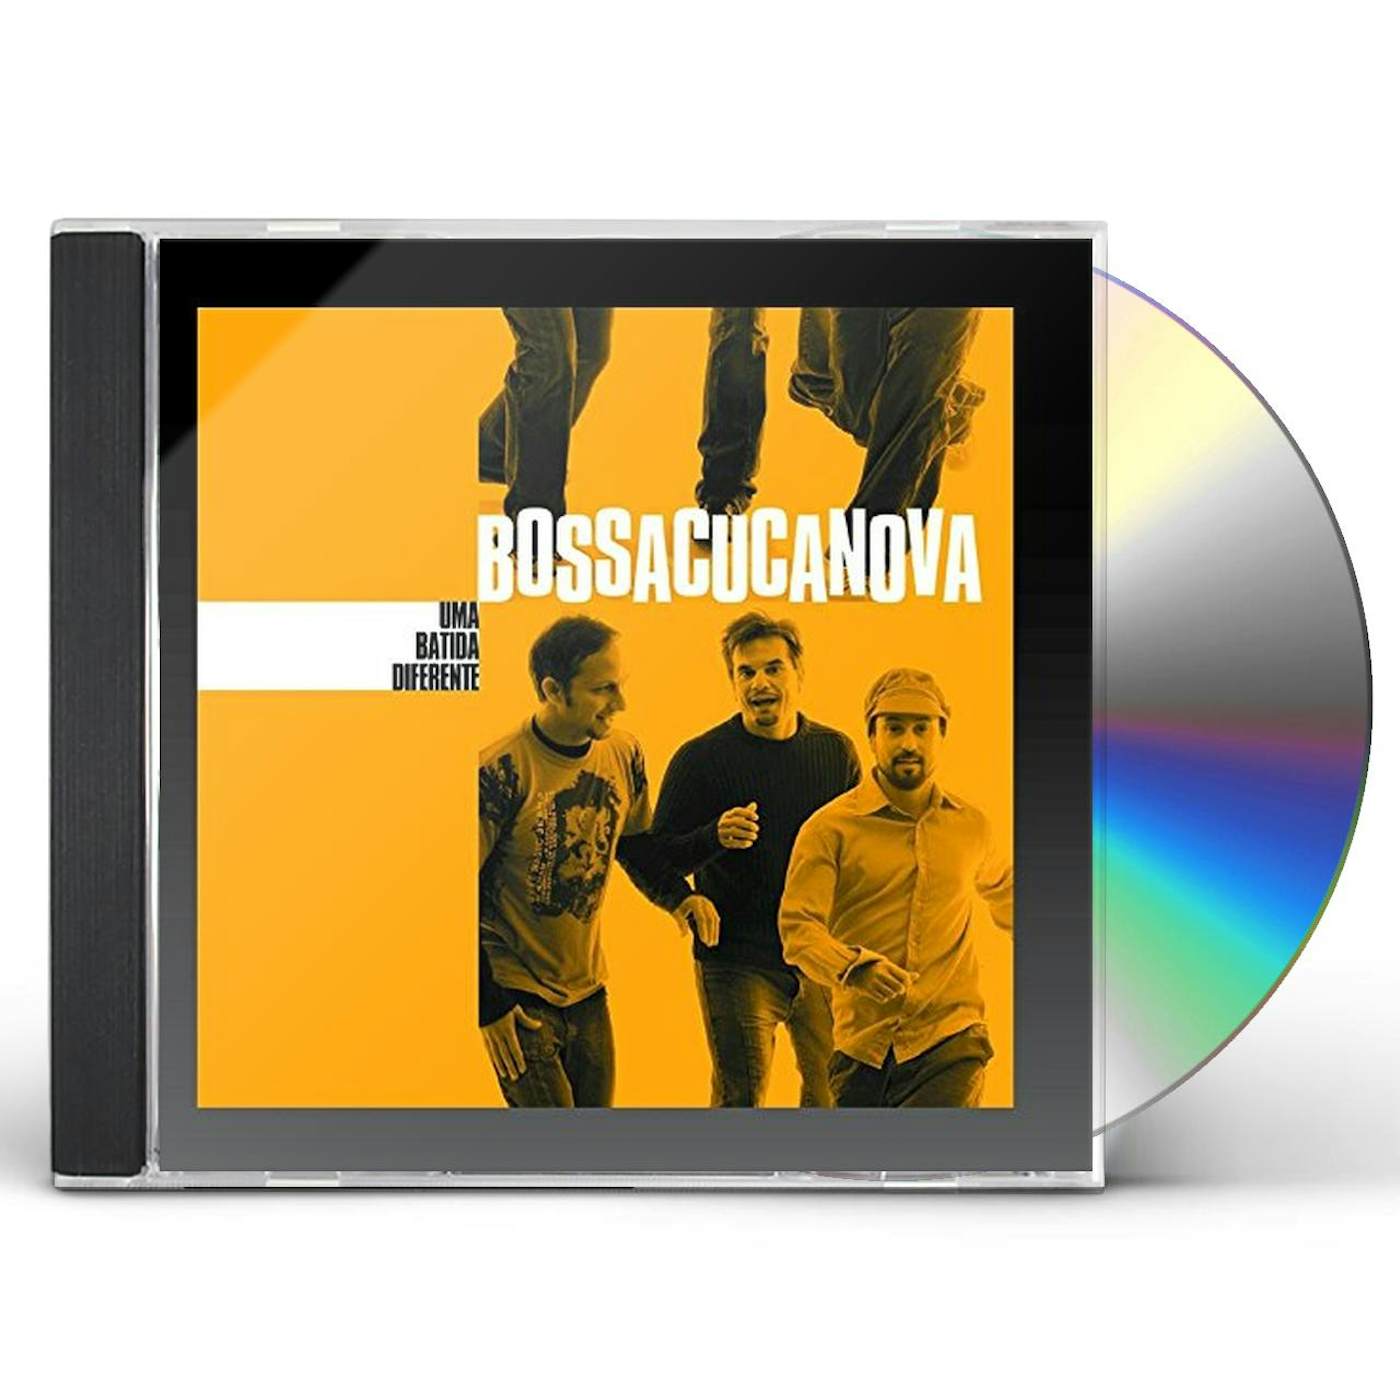 Bossacucanova UMA BATIDA DIFERENTE CD